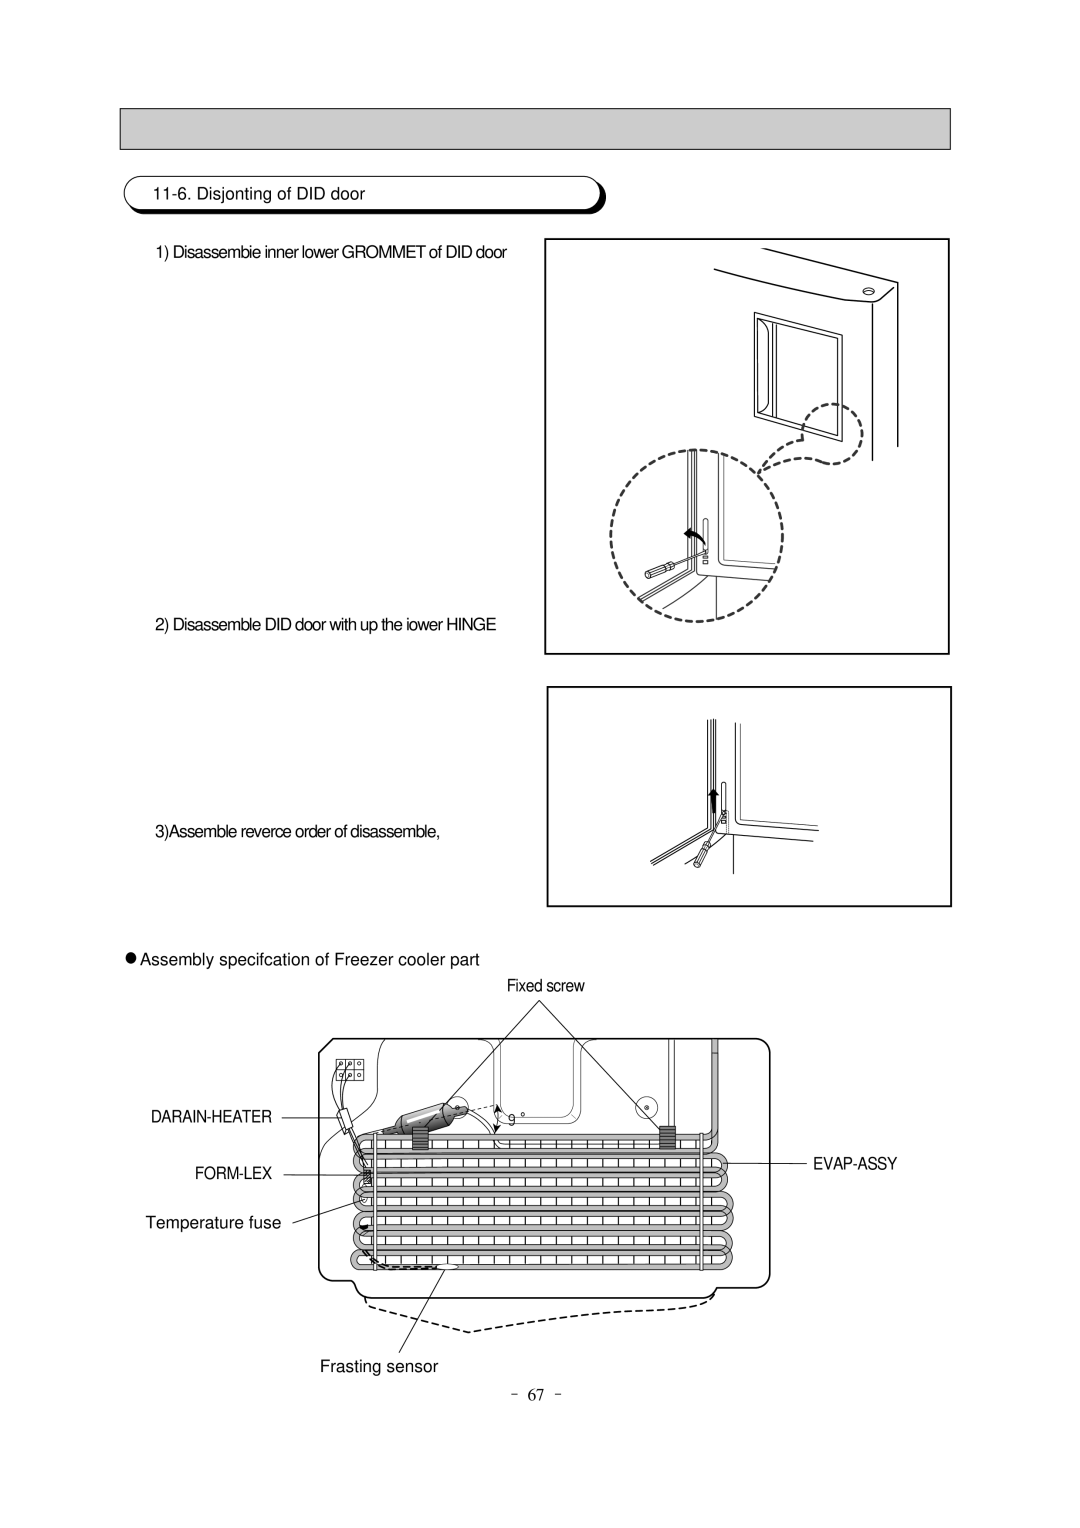 Samsung SR-69NMC, SR-65KTC Disjonting of DID door, Disassembie inner lower GROMMET of DID door, Fixed screw, Darain-Heater 